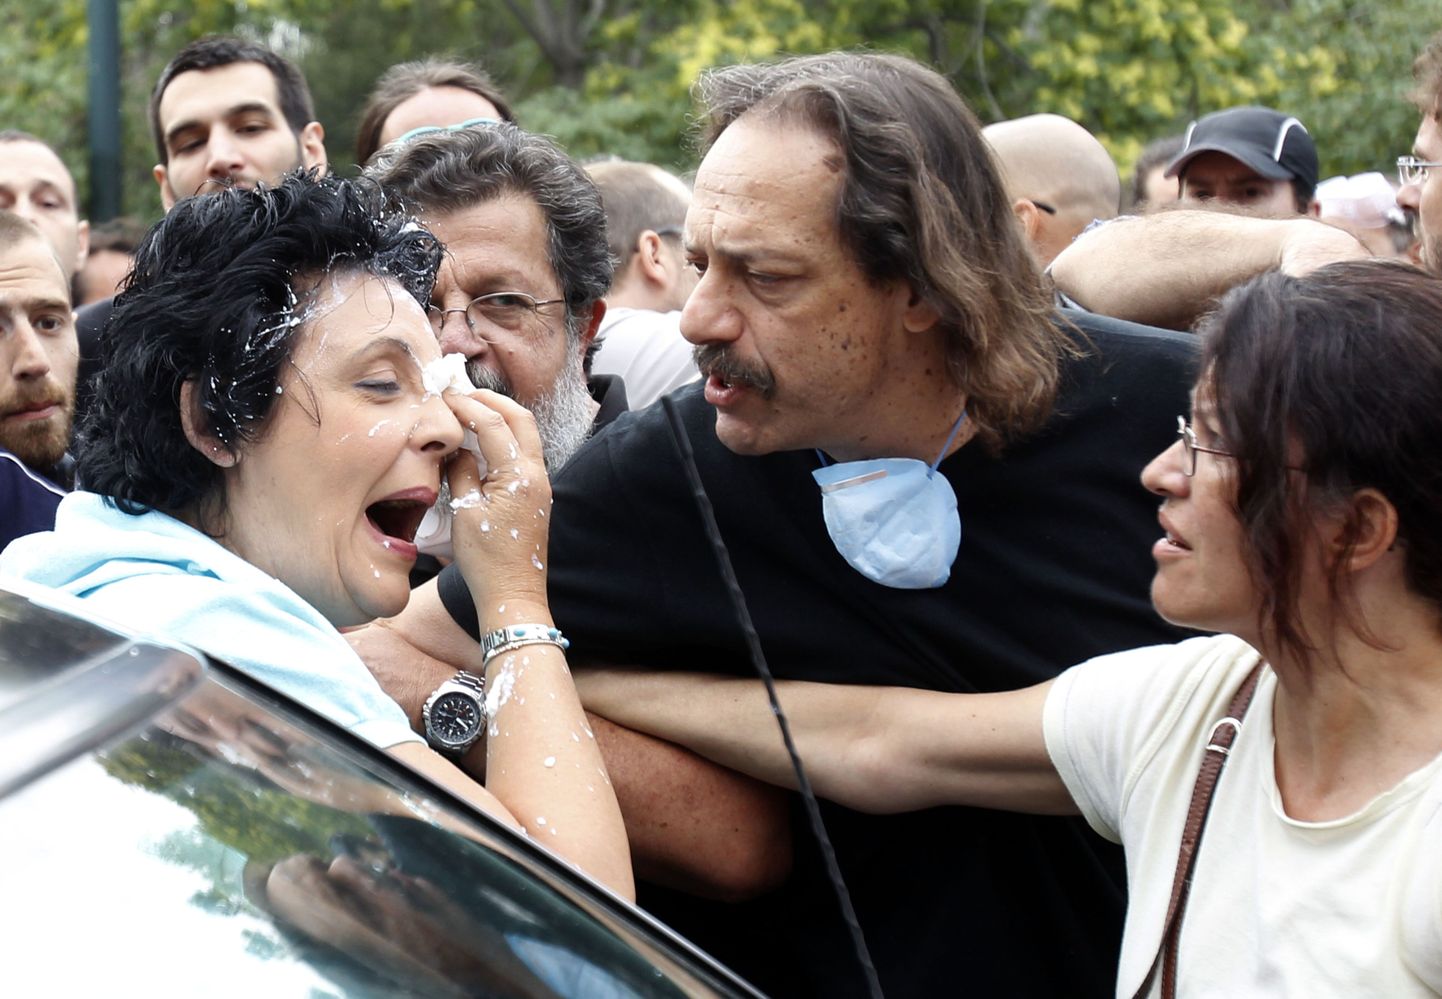 Kreeka protestijate uueks relvaks on saanud jogurt. Pildil kommunistliku partei esindaja Liana Kanelli, kes sai jogurtiga pihta sel kolmapäeval, olles teel parlamenti.